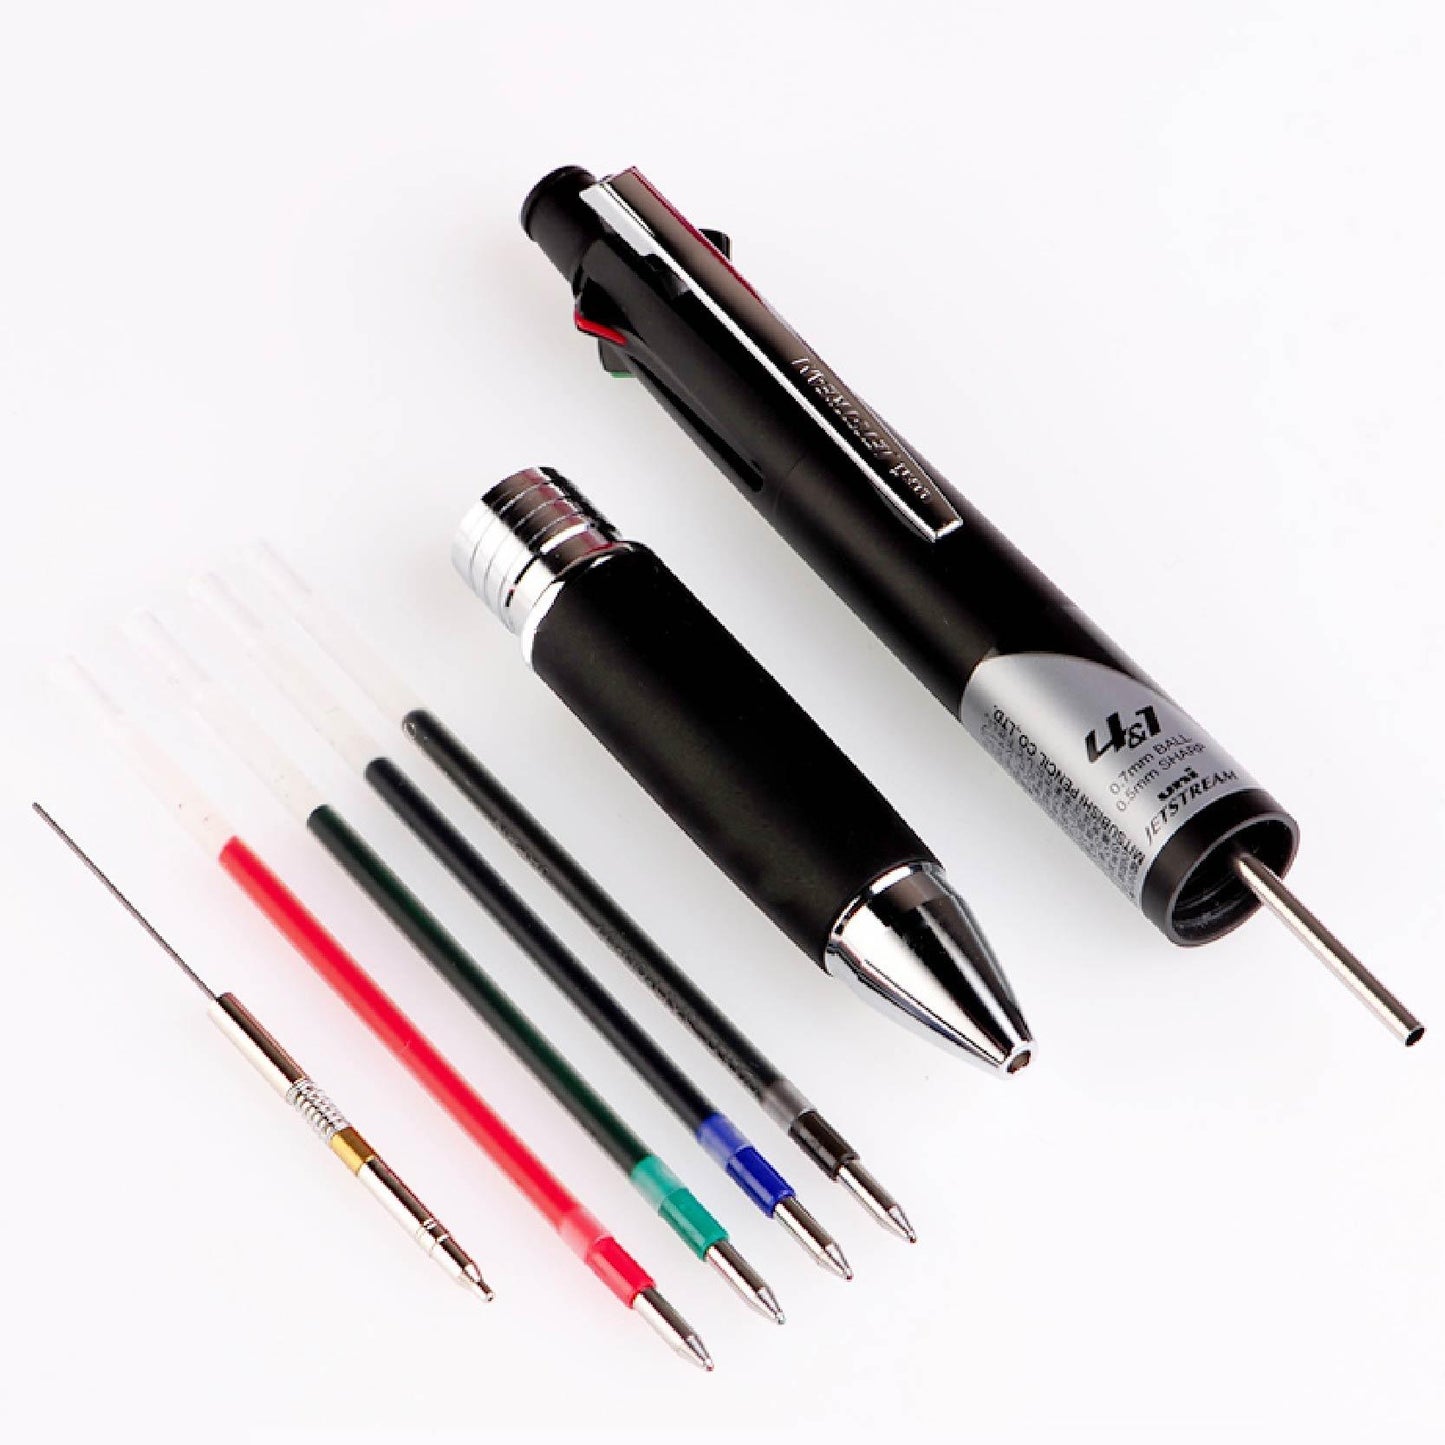 UNI MSXE5-10005 JETSTREAM 4+1 multi-function slide pen 0.5mm 4 colors + mechanical pencil ball pen - CHL-STORE 